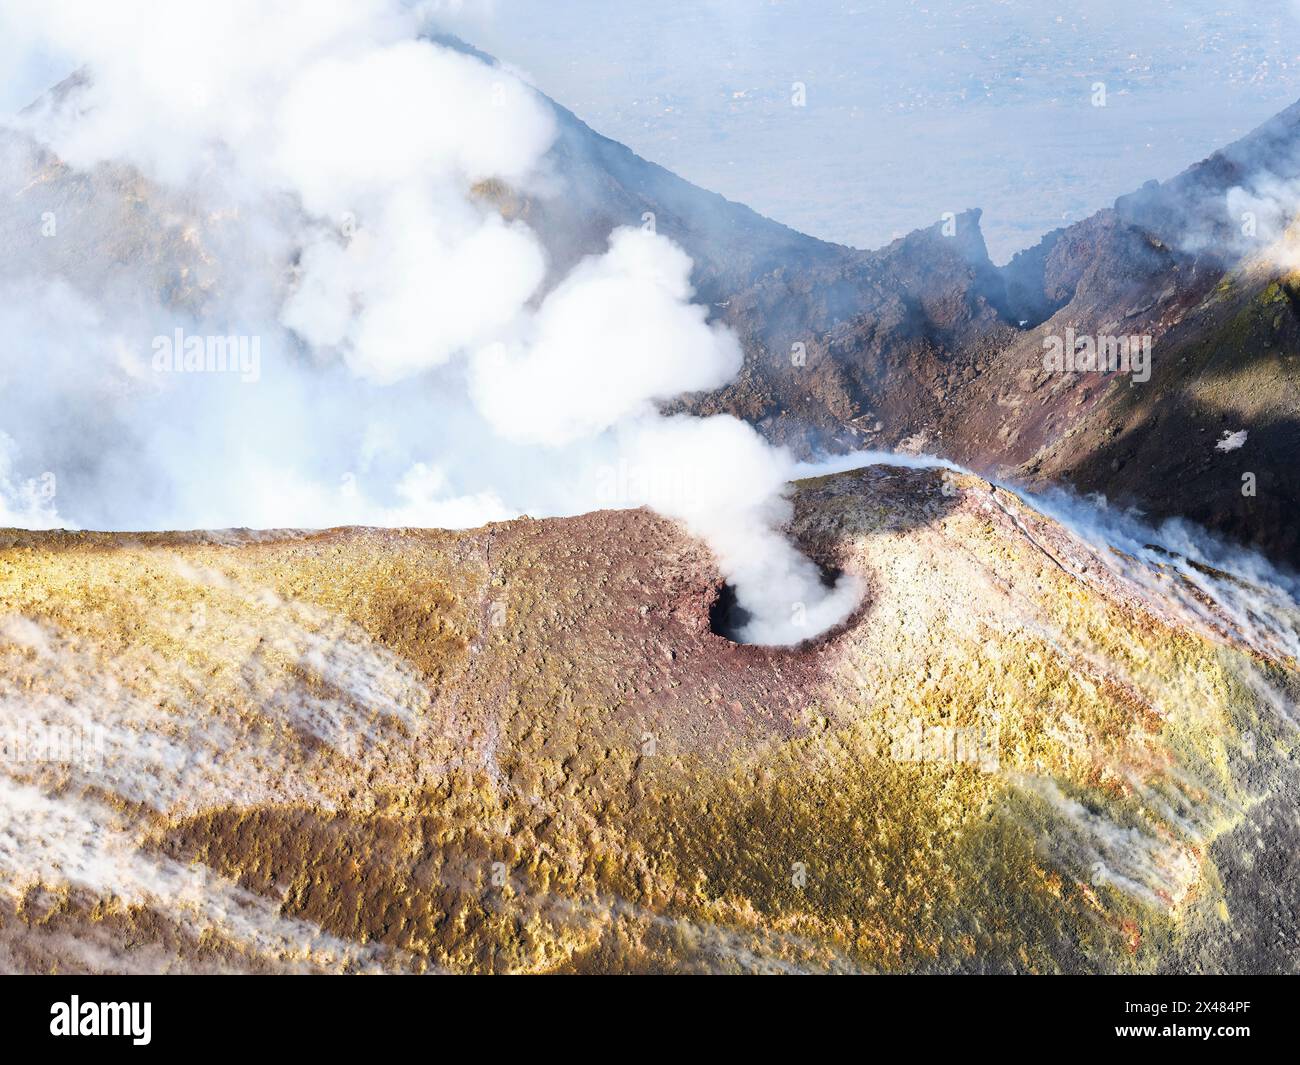 VUE AÉRIENNE. Nouveau cratère Sud-est sur l'Etna avec l'évent d'où proviennent les anneaux de fumée. Ville métropolitaine de Catane, Sicile, Italie. Banque D'Images